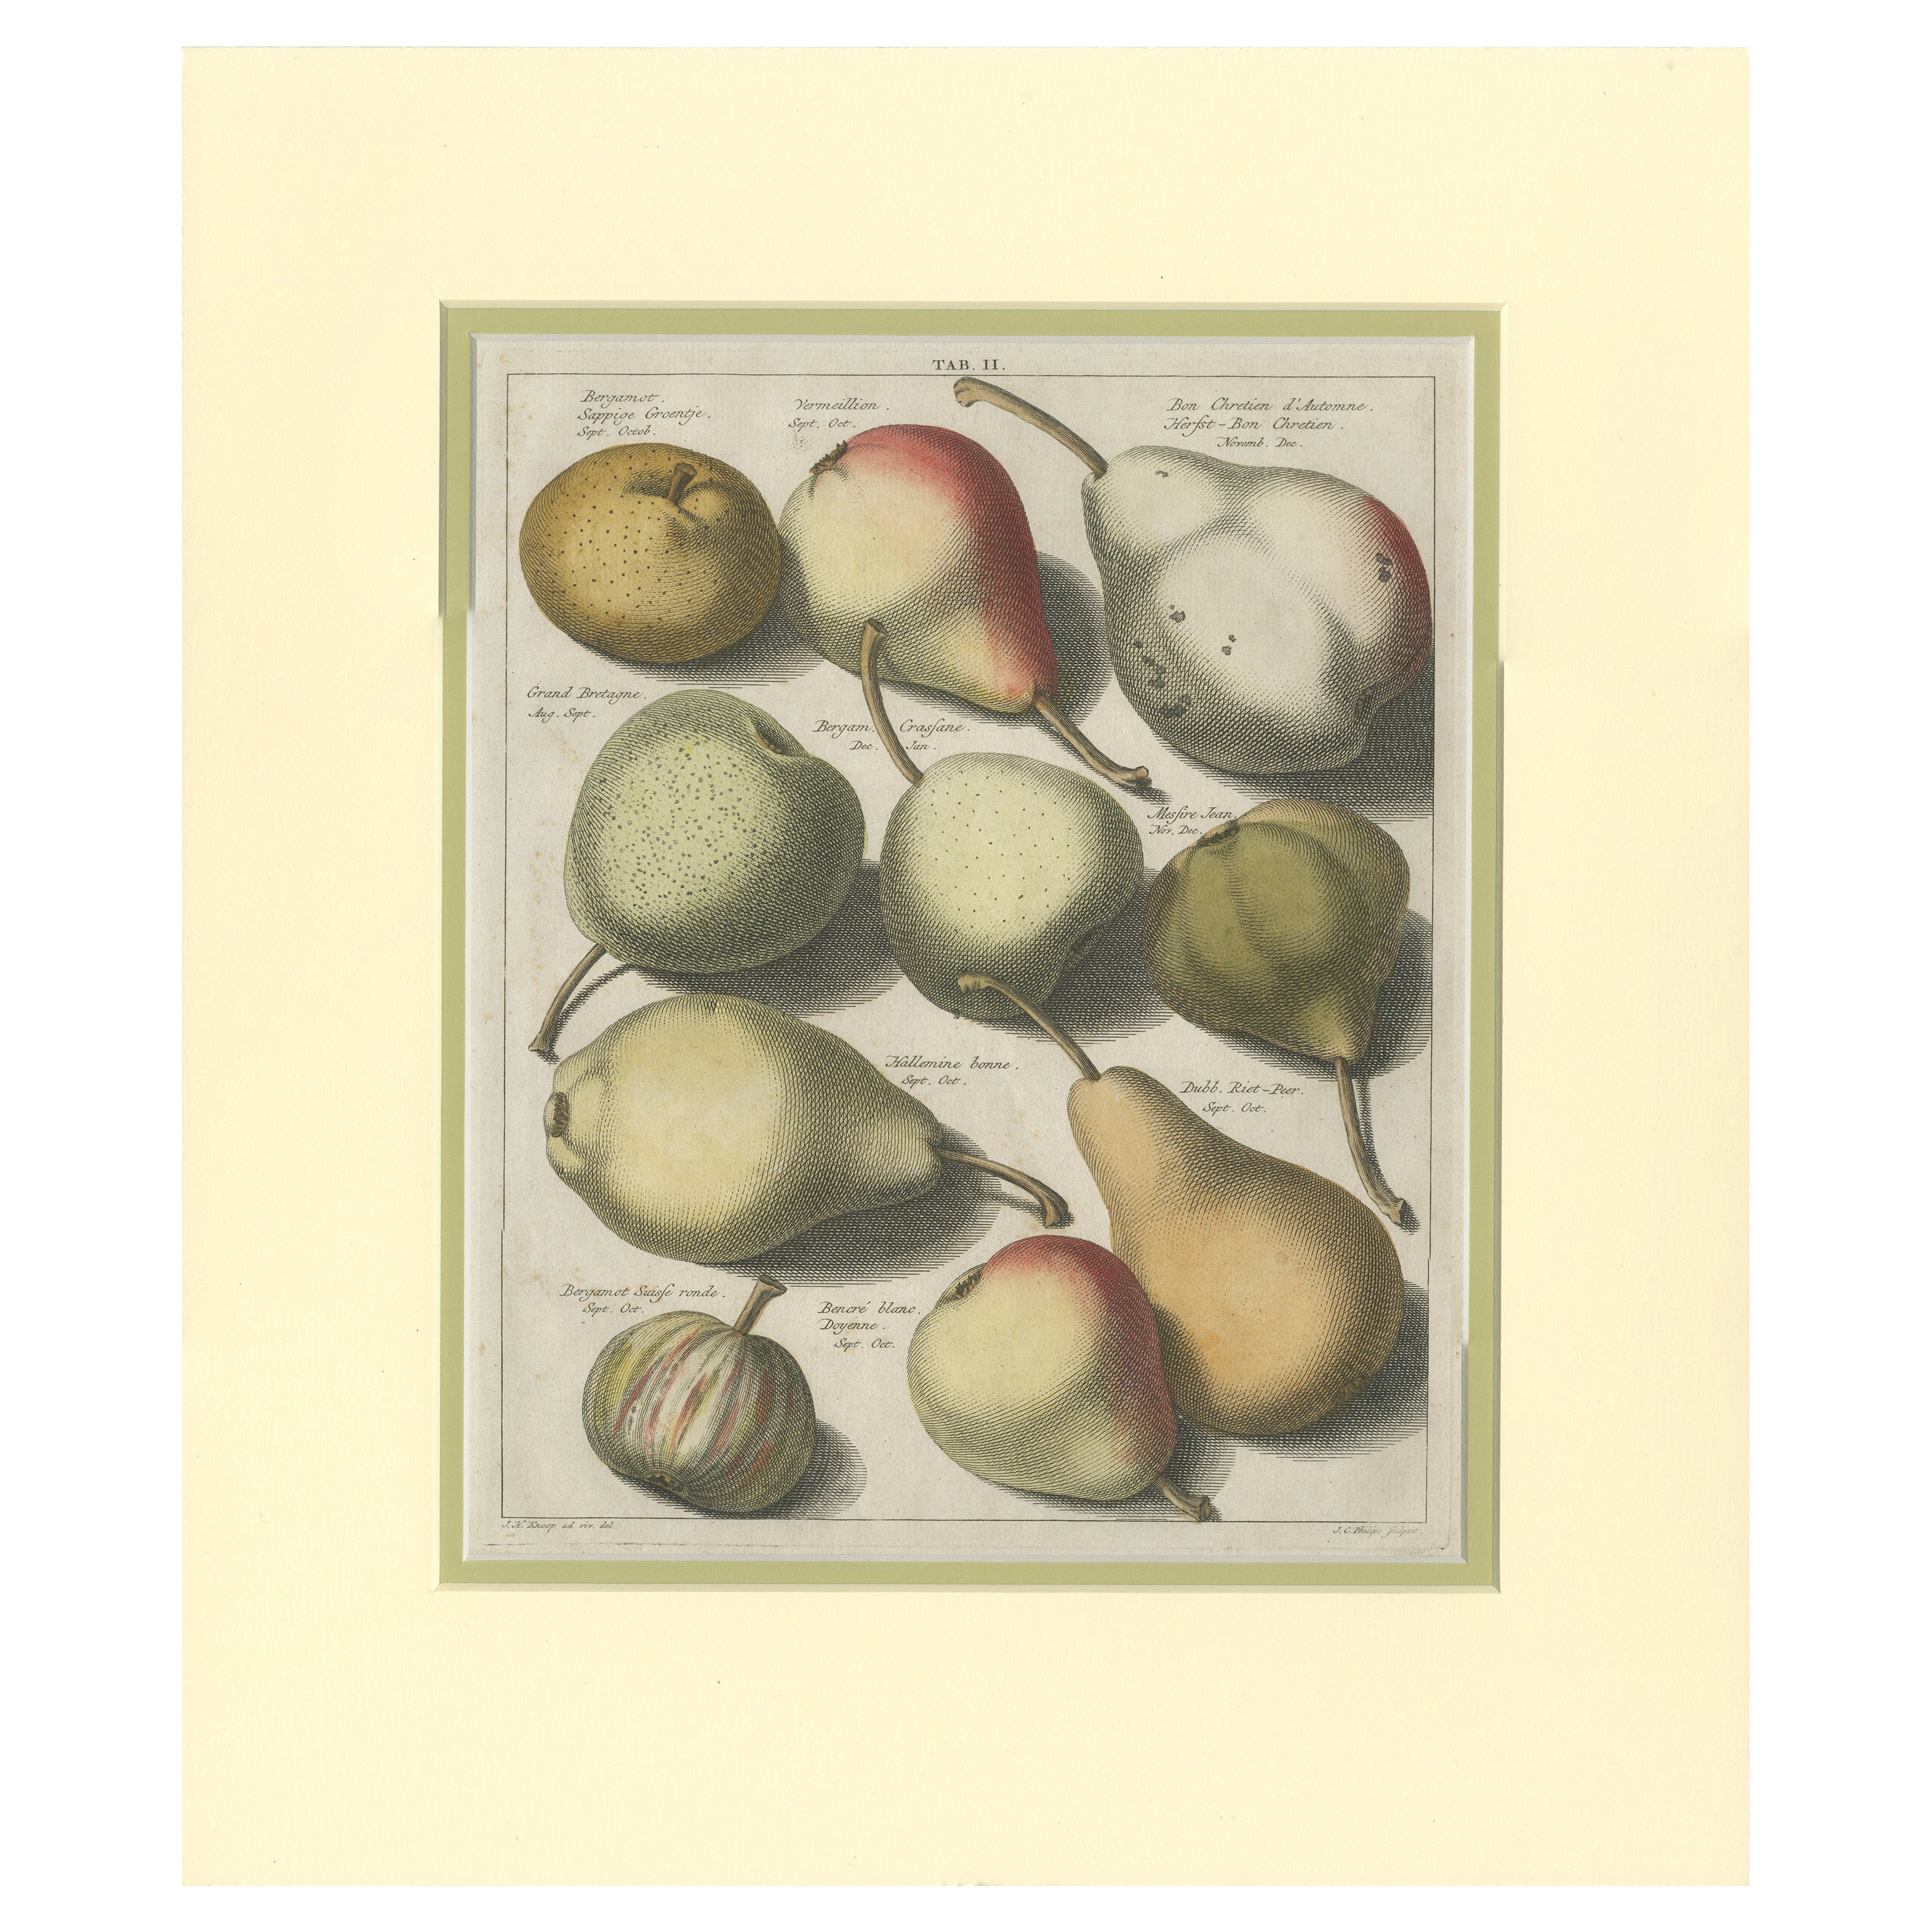 Tab II - Impression ancienne de poires diverses par Knoop (1758)